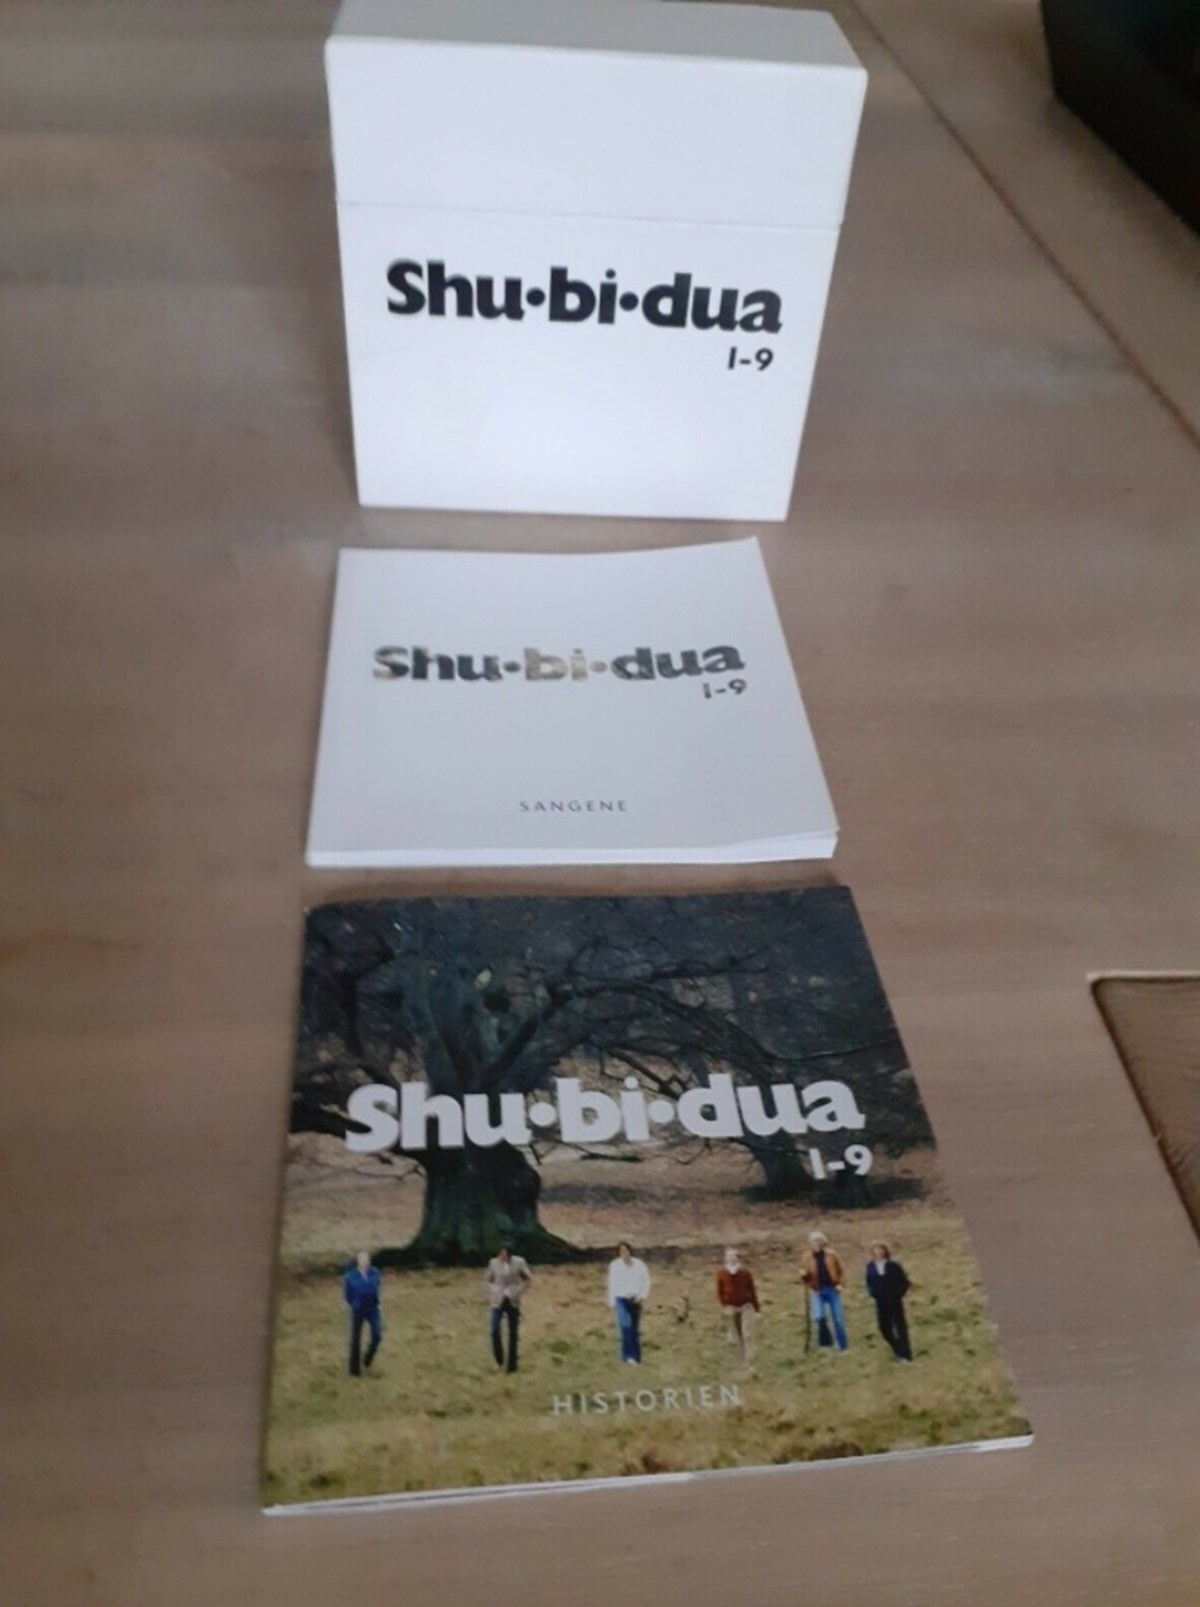 Du kan lige nu finde mange Shu-bi-dua-CD'er til salg på DBA. For eksempel koster dette bokssæt lige nu 1.900 kroner på DBA. Det er Michael fra Hellerup, der har det til salg.